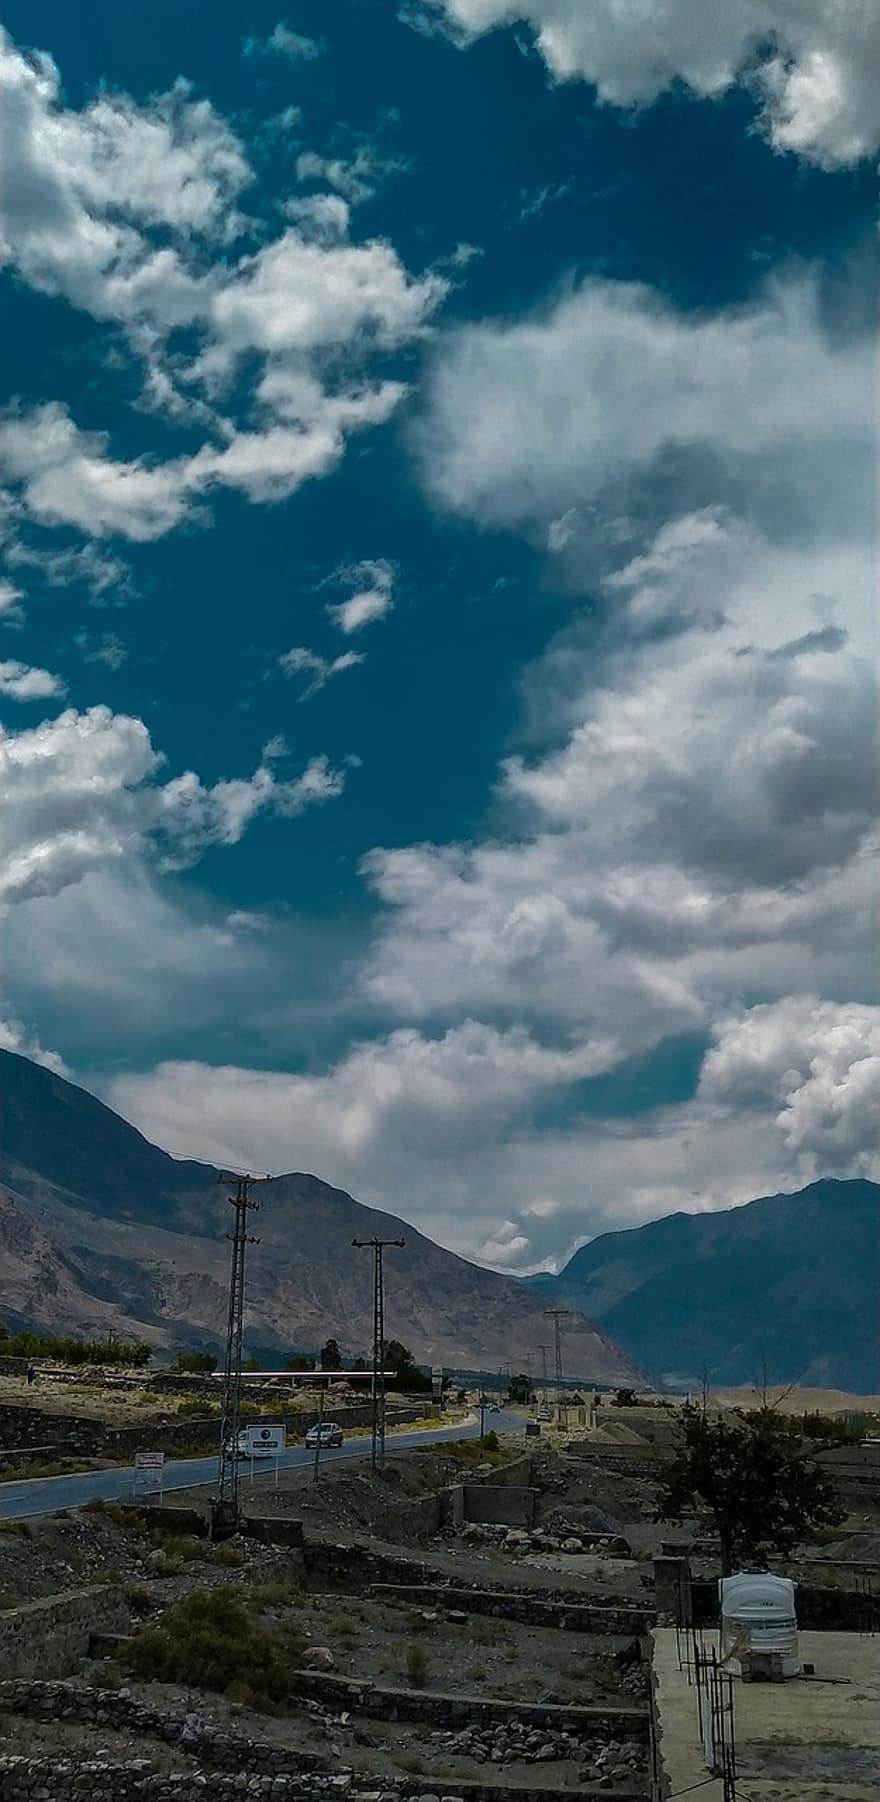 gilgitbaltistão, Paquistão, exterior, nuvens, estrada, céu, azul, montanha, contraste, alvorecer, por do sol